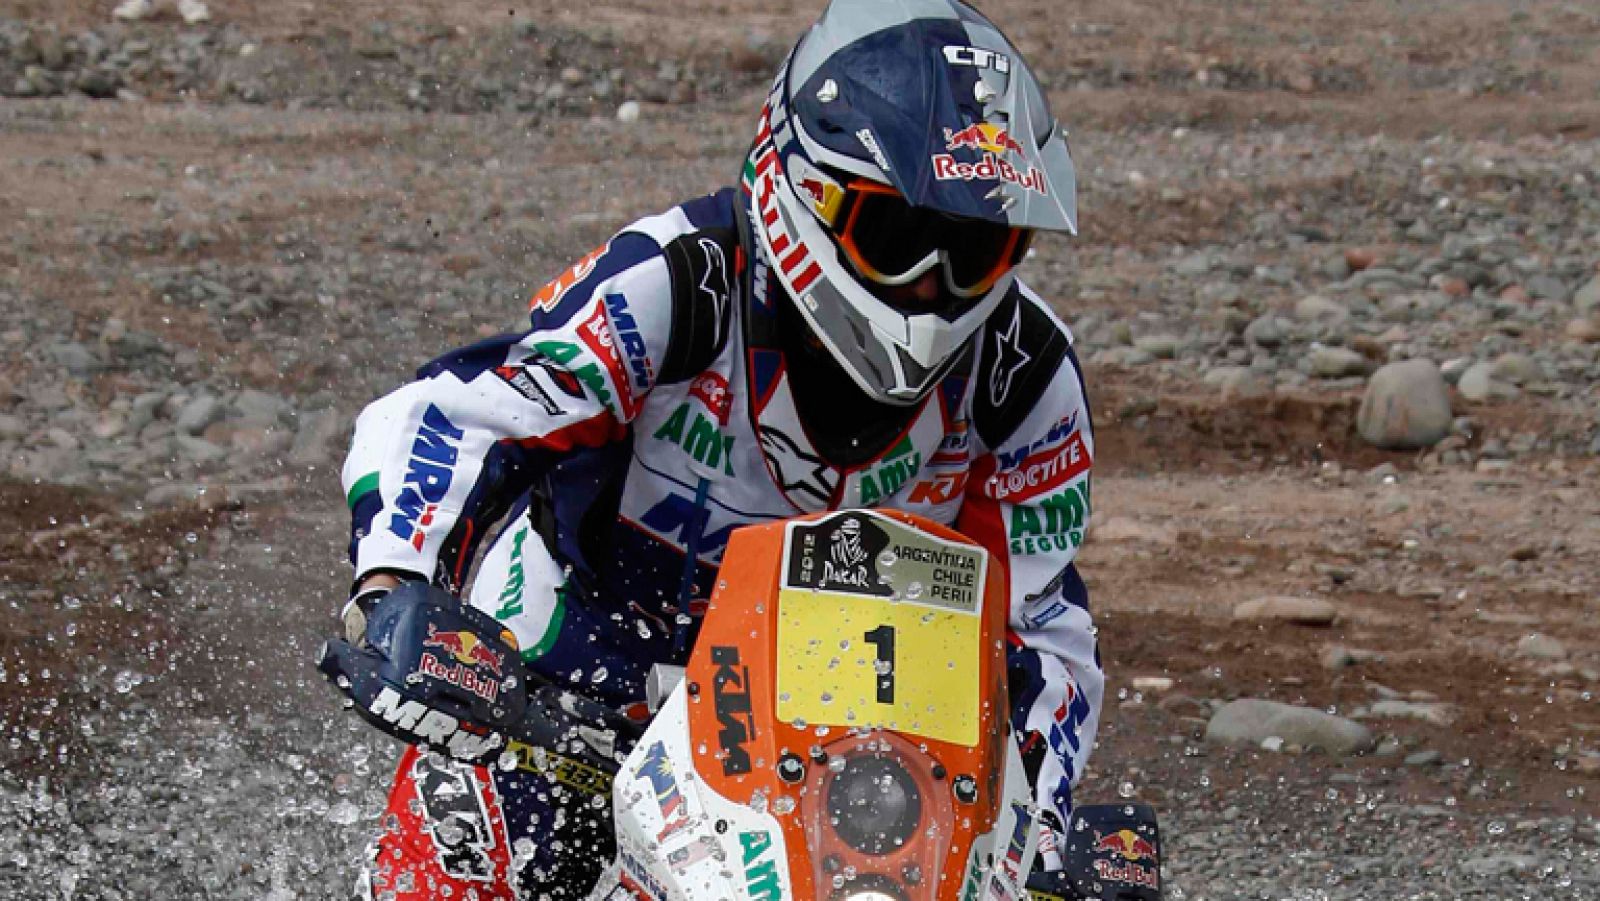 El piloto español Marc Coma (KTM) quiso dejar bien claro que  todavía sigue "presente" en el Rally Dakar 2012 después de imponerse  en la cuarta etapa del certamen y recortar dos minutos al líder de la  categoría, el francés Cyril Despres (KTM).